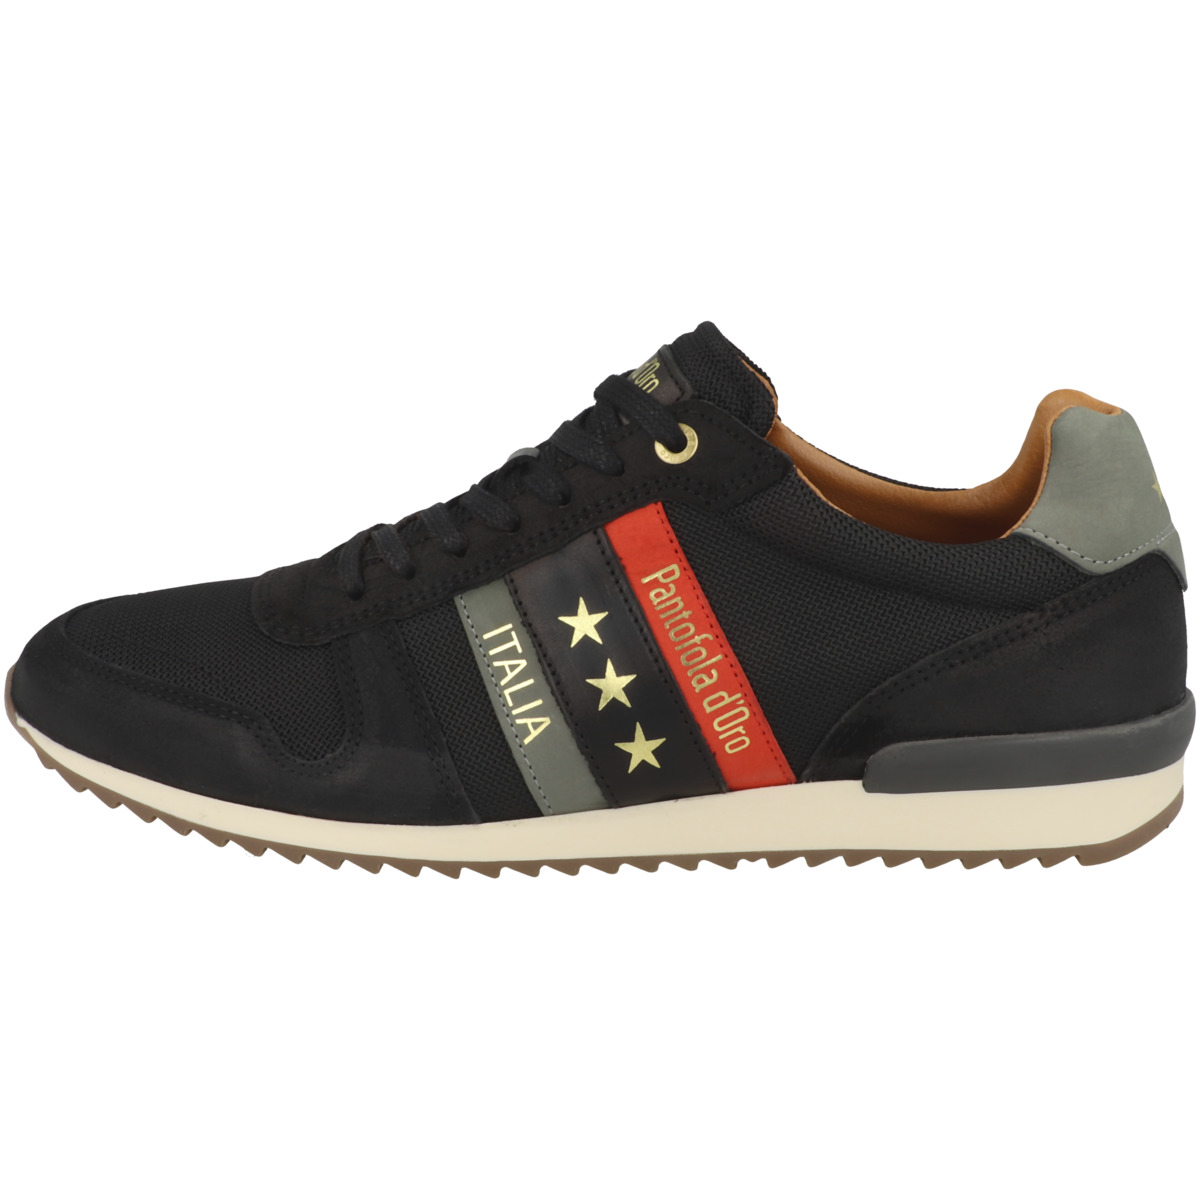 Pantofola d Oro Rizza N Uomo Low Sneaker schwarz